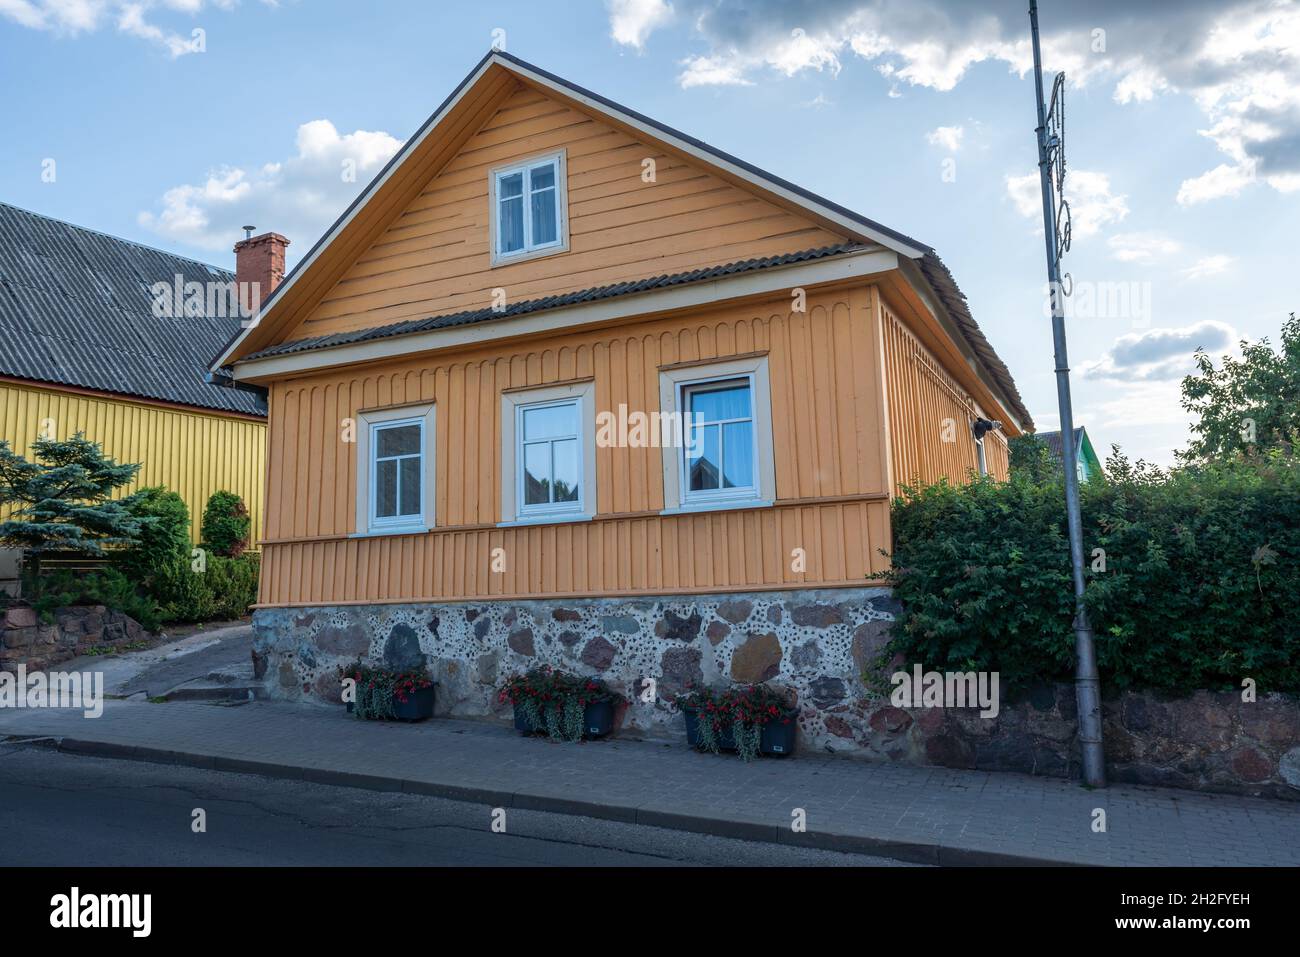 Maison typique de Karaite à triple fenêtre - Trakai, Lituanie Banque D'Images